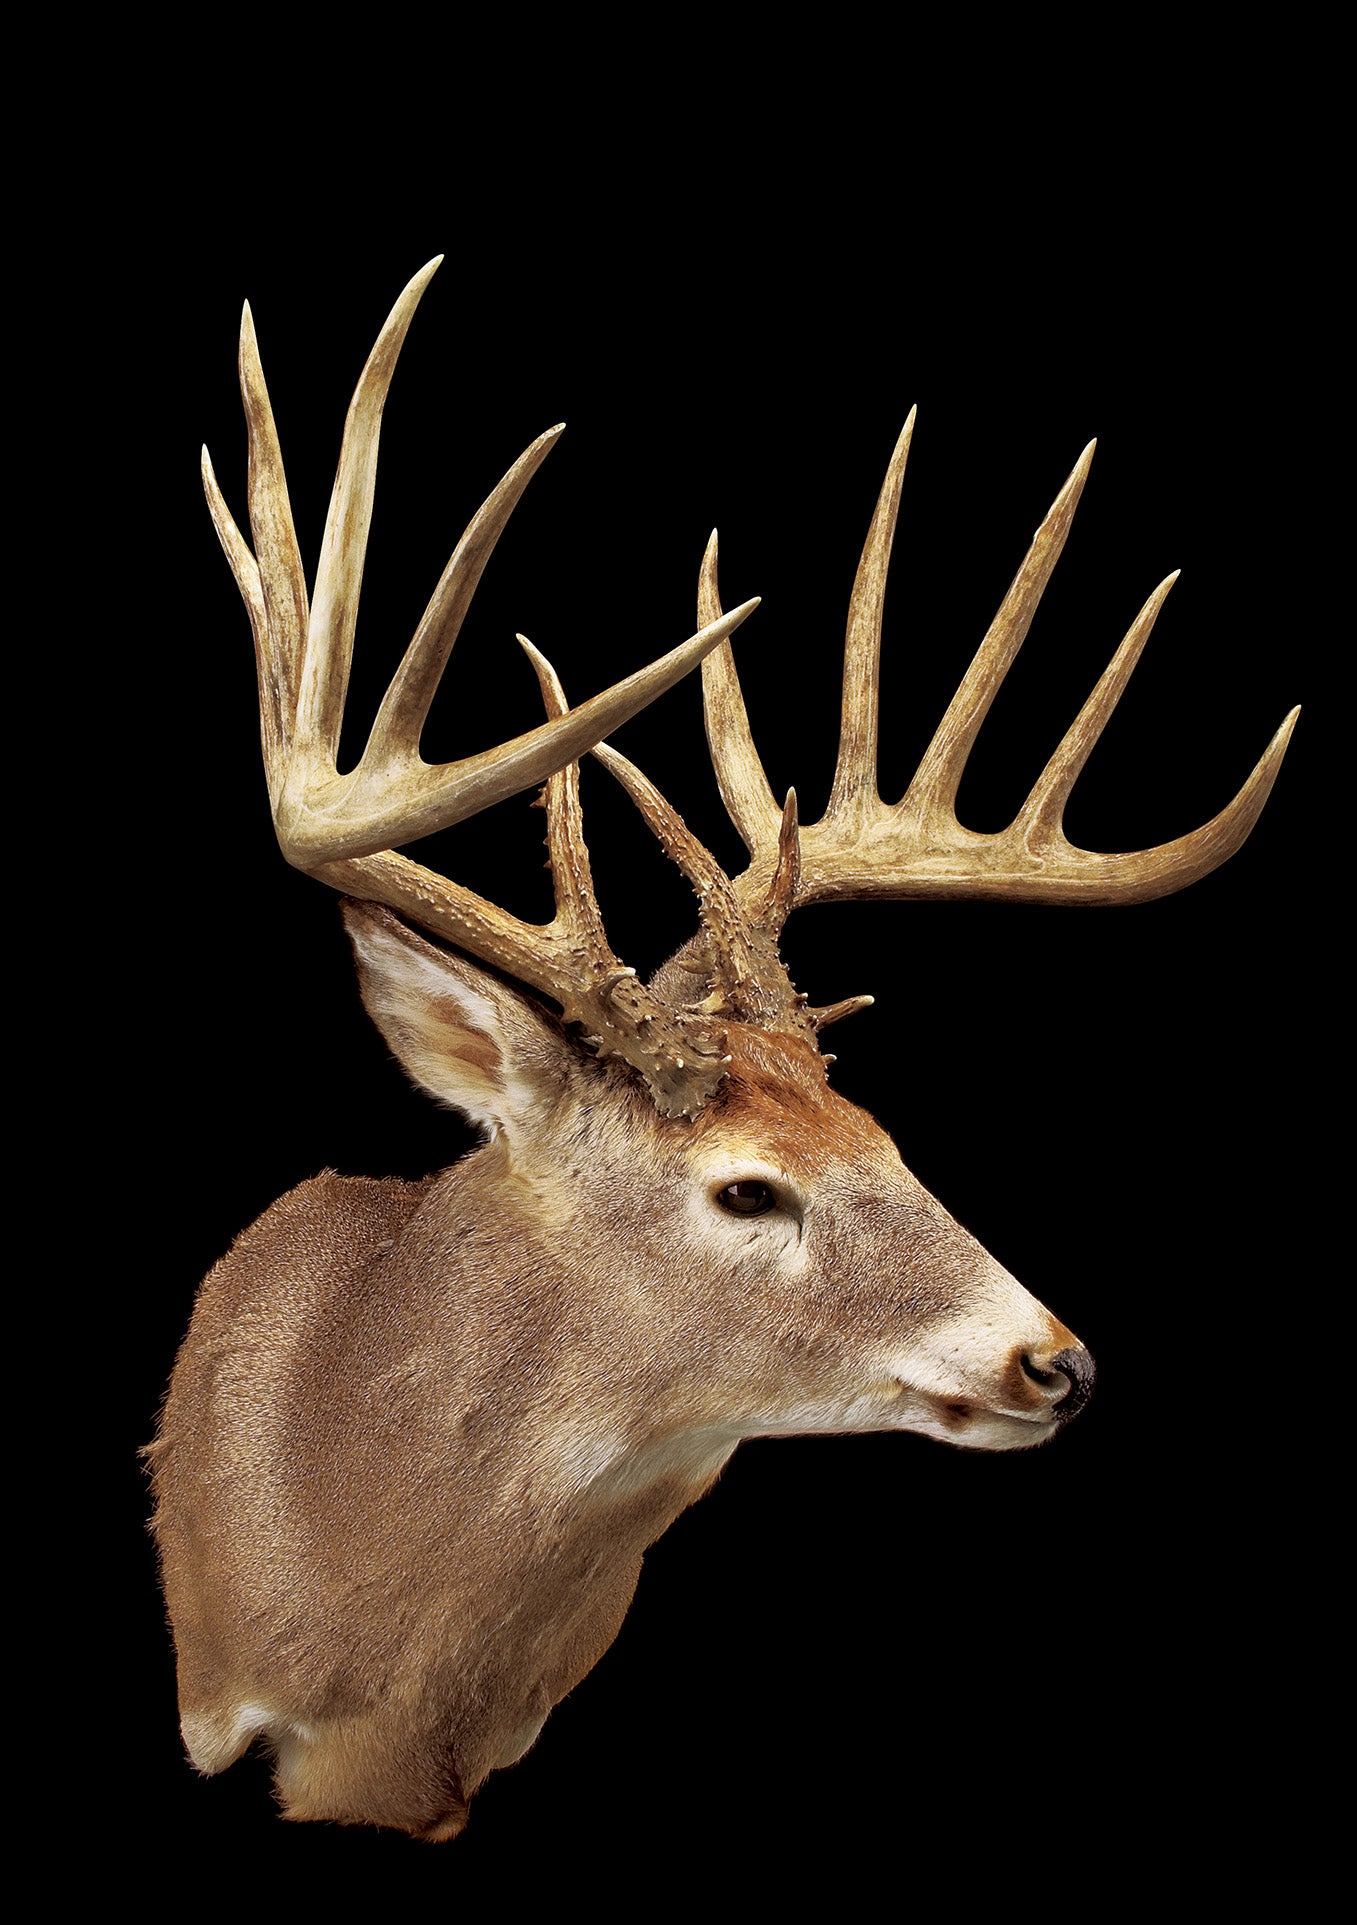 B&C record whitetail deer from Washington